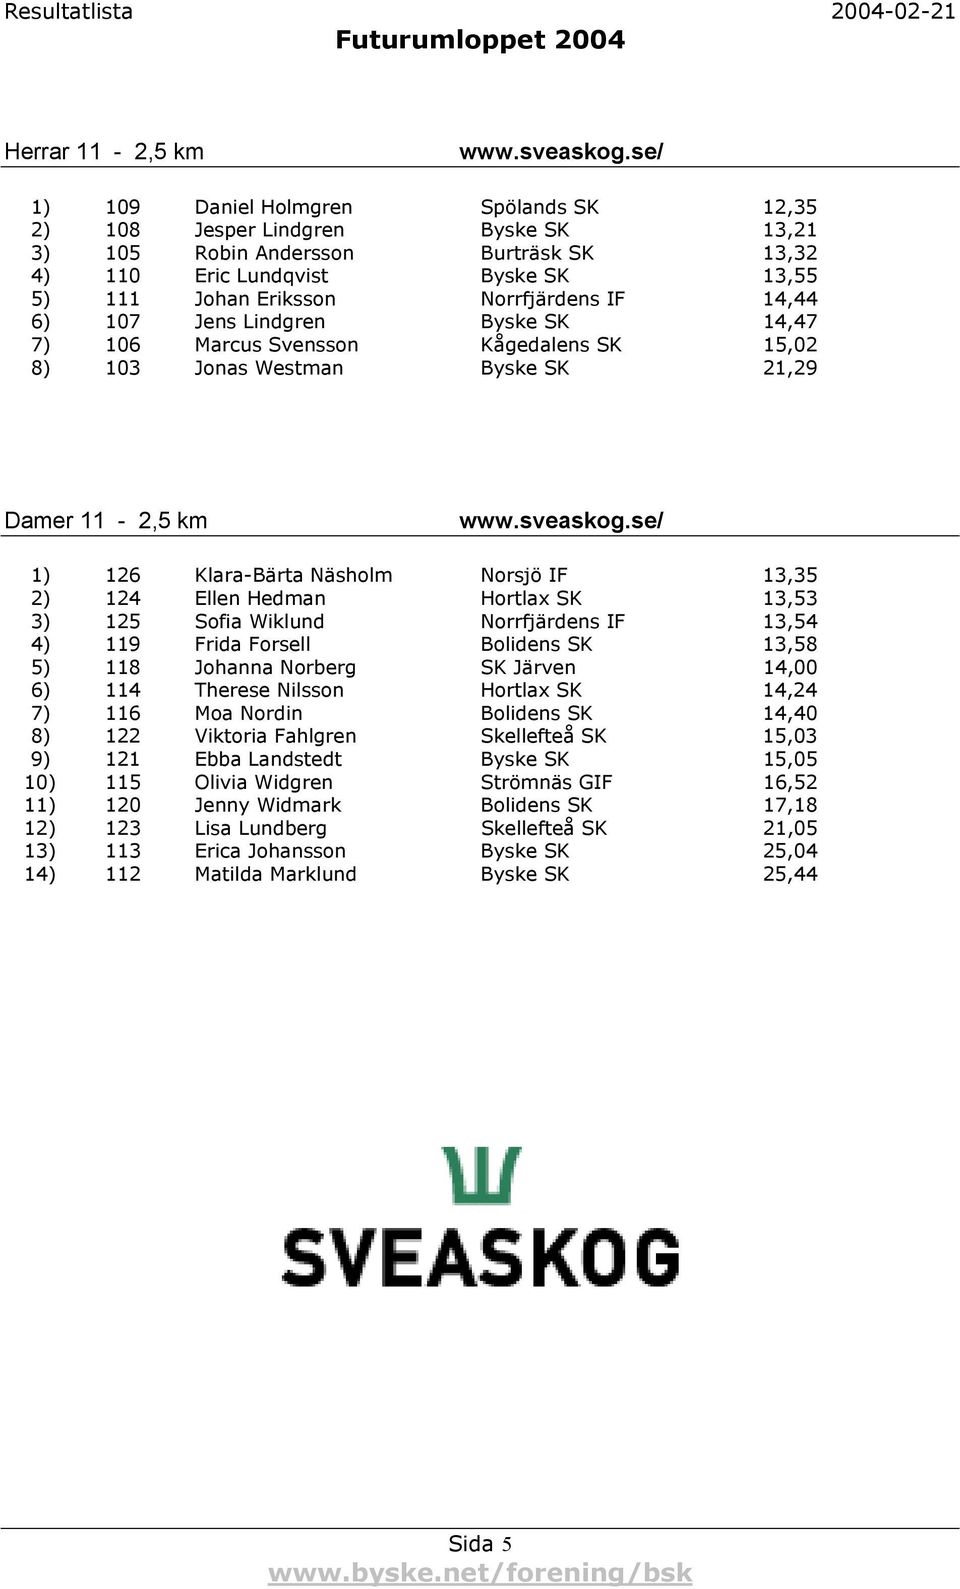 14,44 6) 107 Jens Lindgren Byske SK 14,47 7) 106 Marcus Svensson Kågedalens SK 15,02 8) 103 Jonas Westman Byske SK 21,29 Damer 11-2,5 km www.sveaskog.